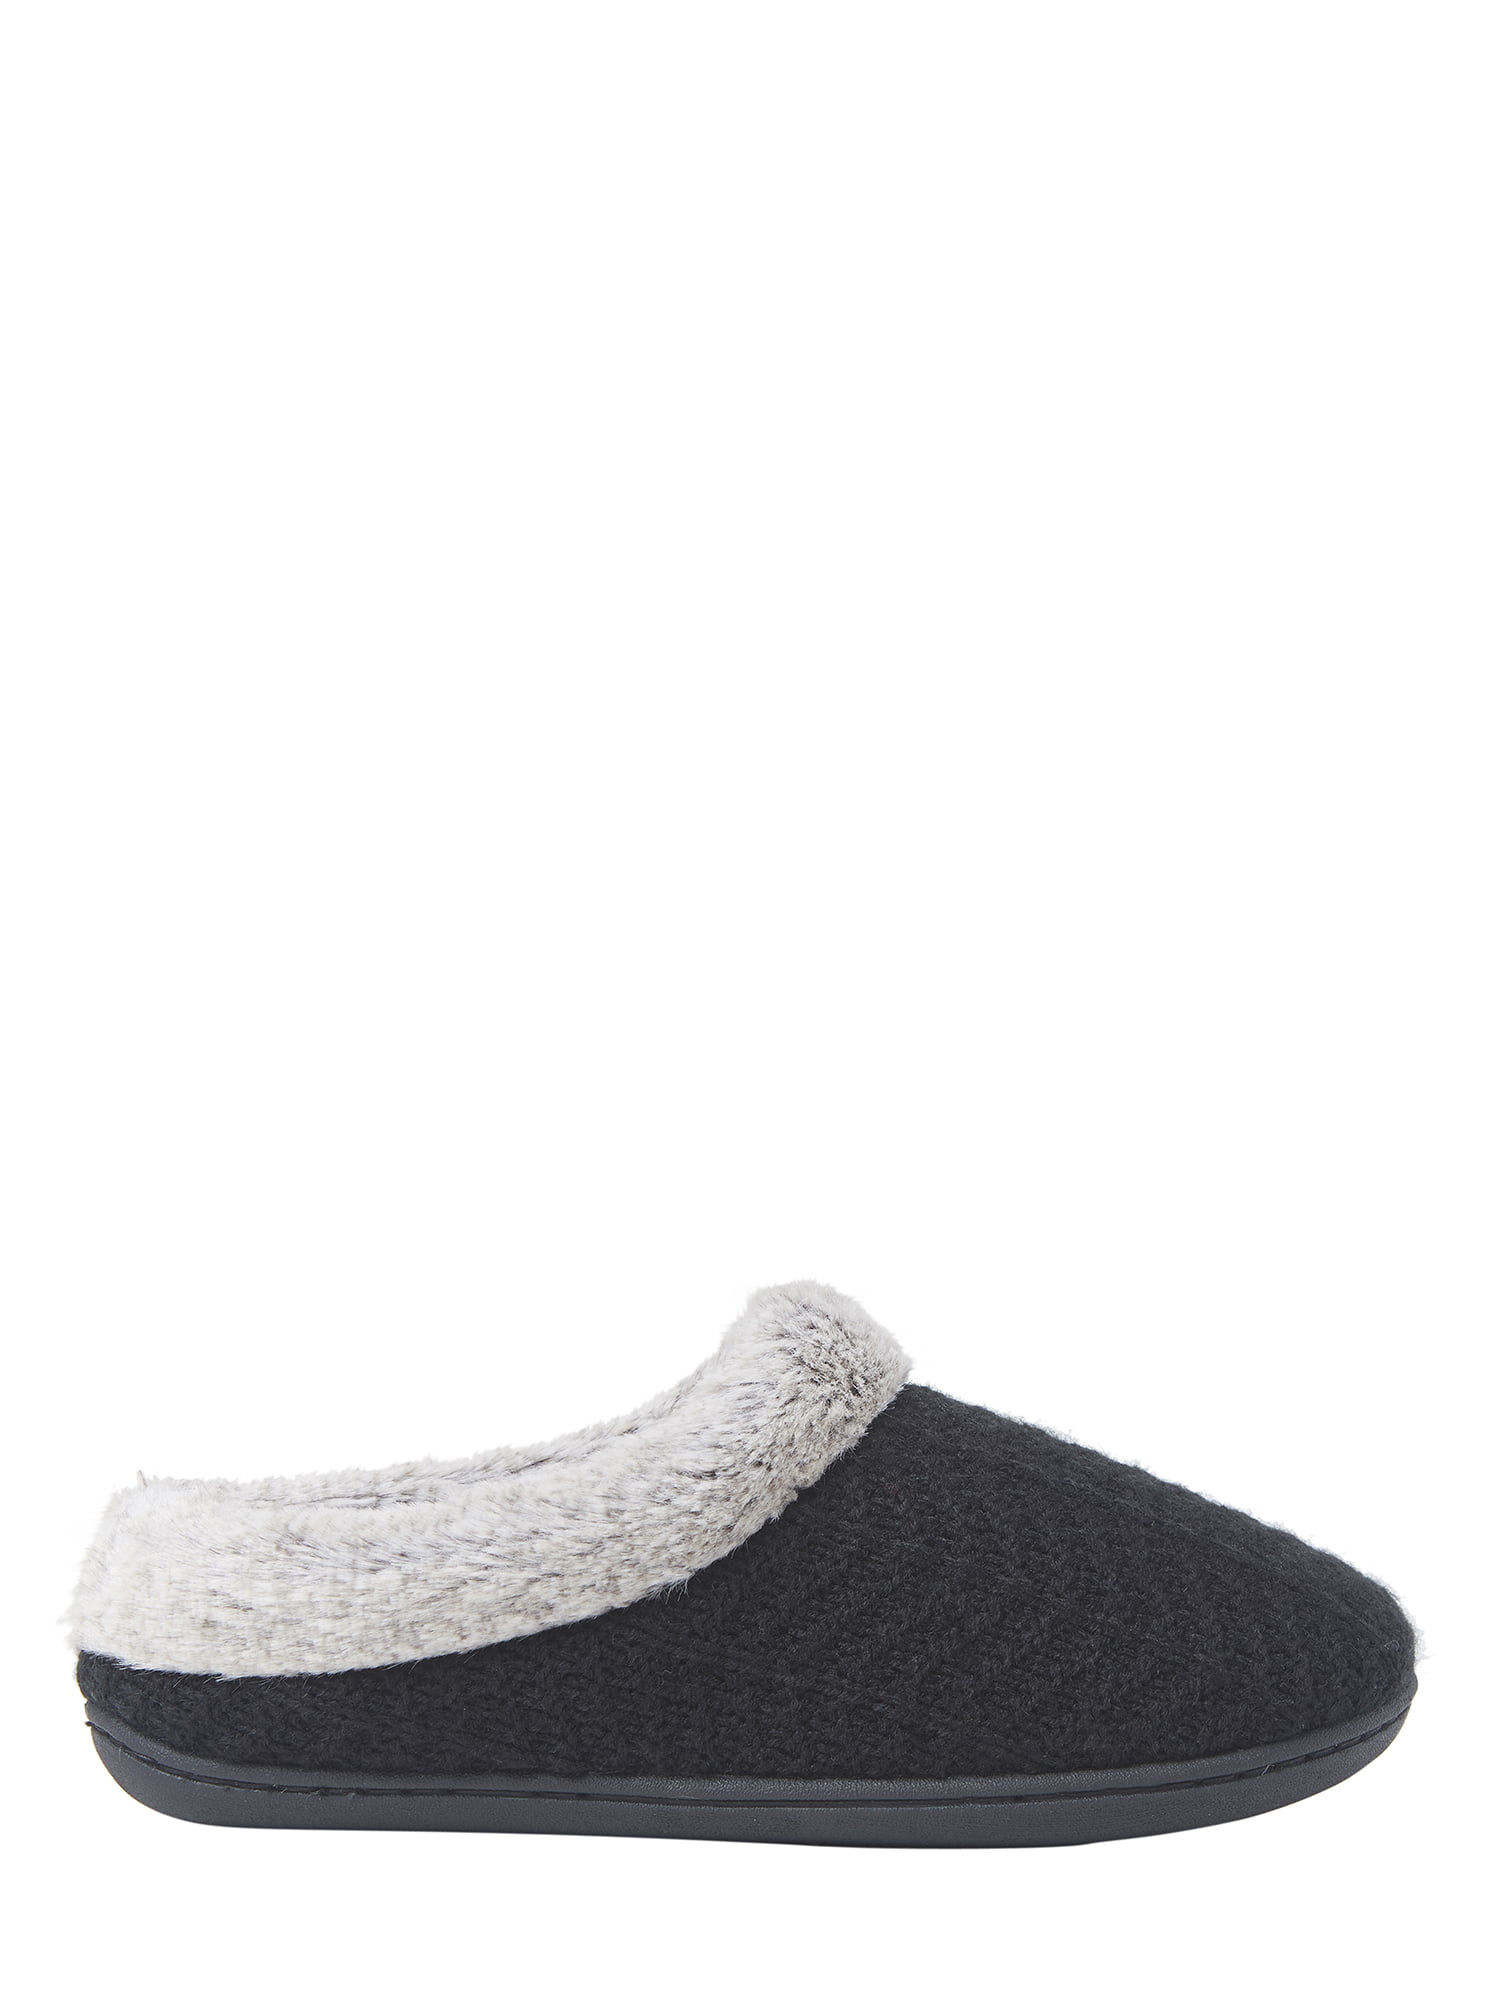 Dearfoams Women's Sweater Knit Clog Memory Foam Slippers Large/9-10, Oatmeal 